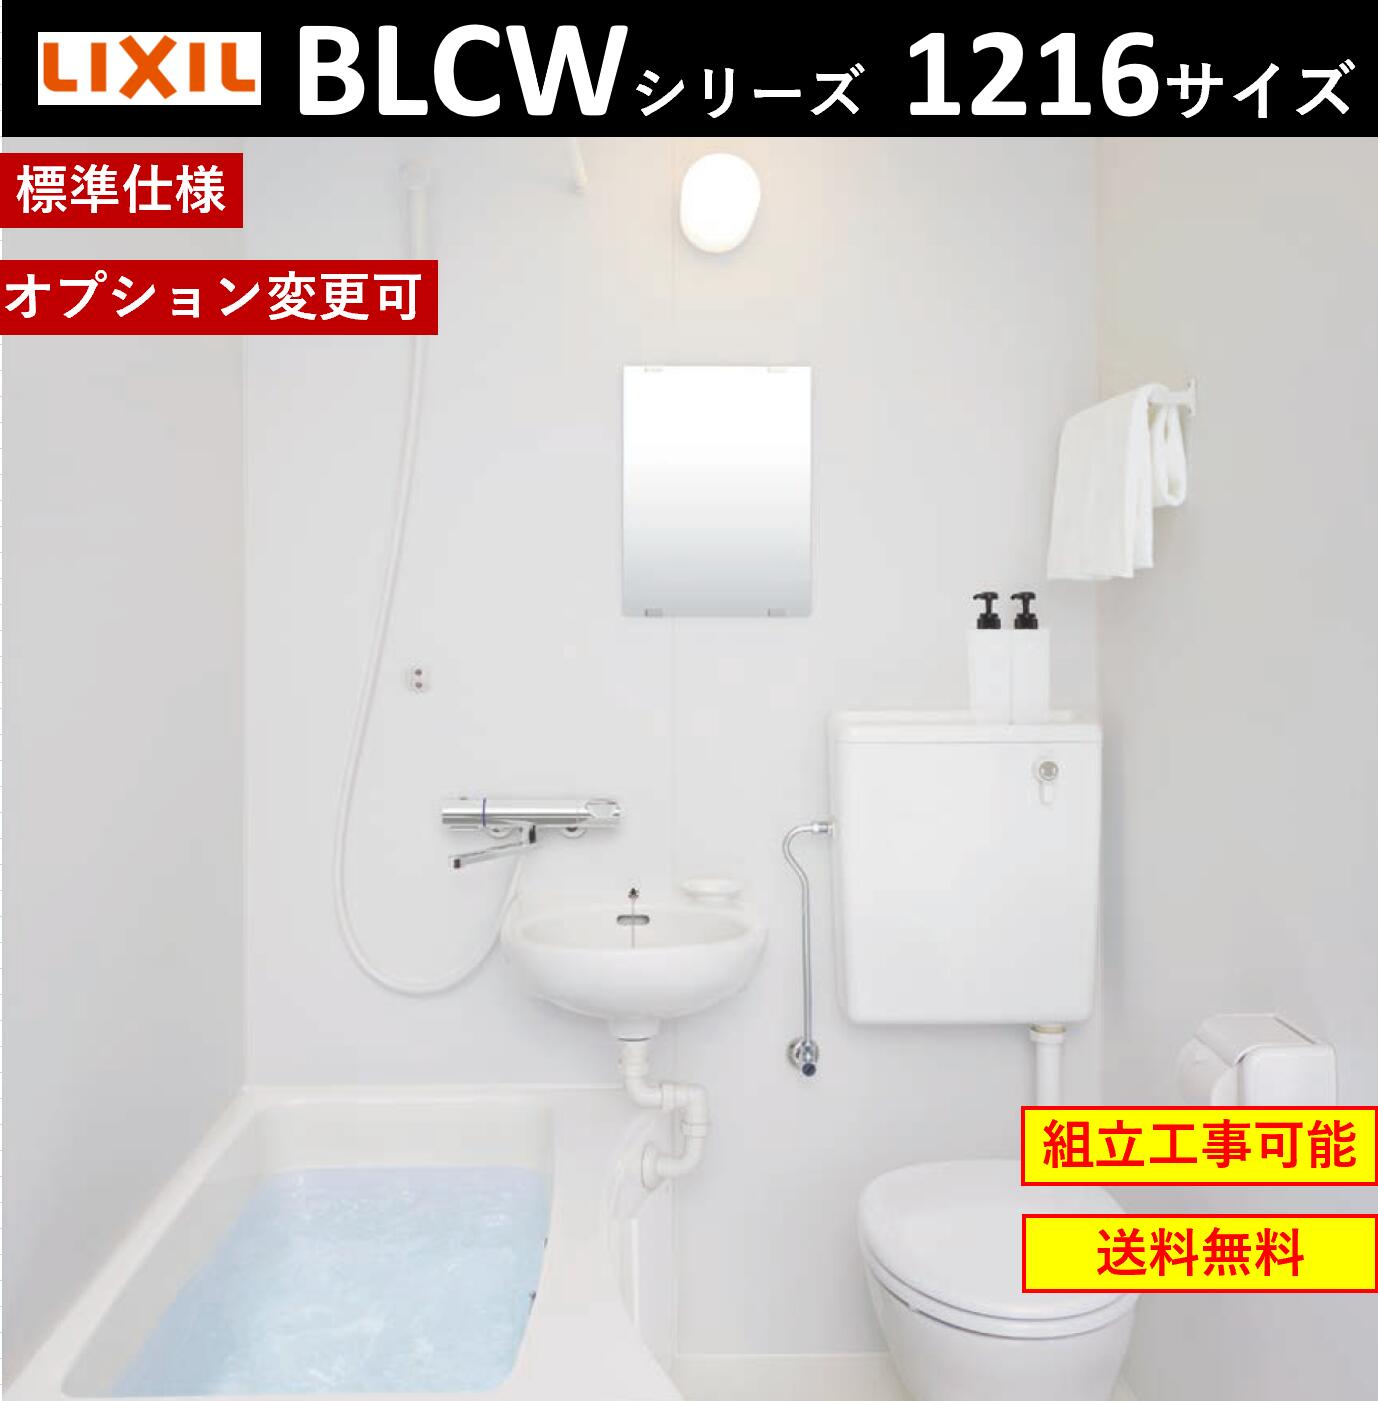 直売公式★LIXILホテル向け洗面・便器付ユニットバス★BLCW-1216サイズ ユニットバス